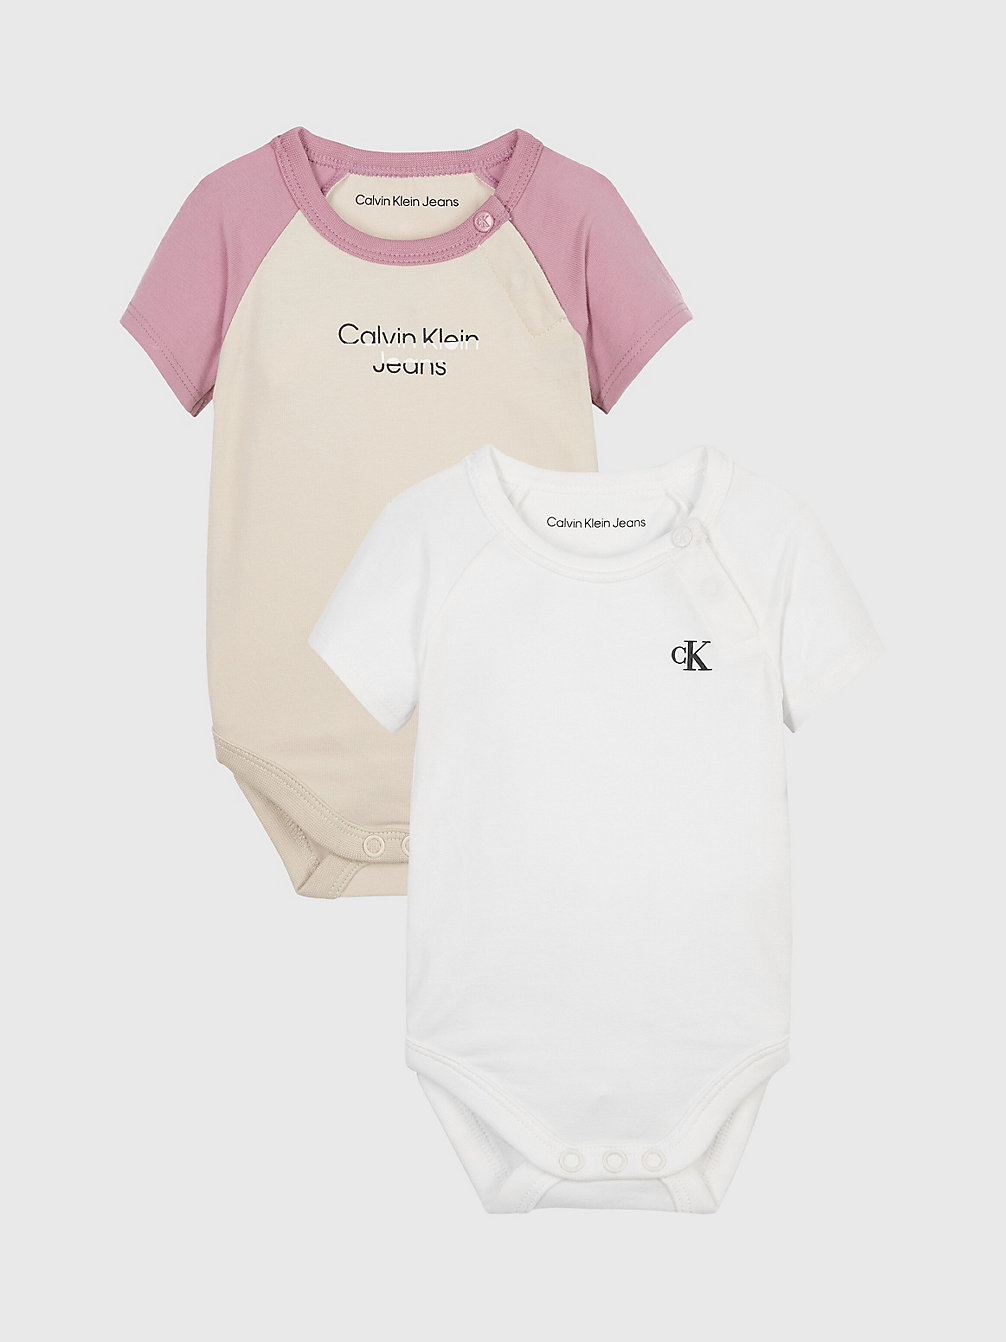 BRIGHT WHITE / CLASSIC BEIGE Newborn 2-Pack Bodysuit Set undefined newborn Calvin Klein